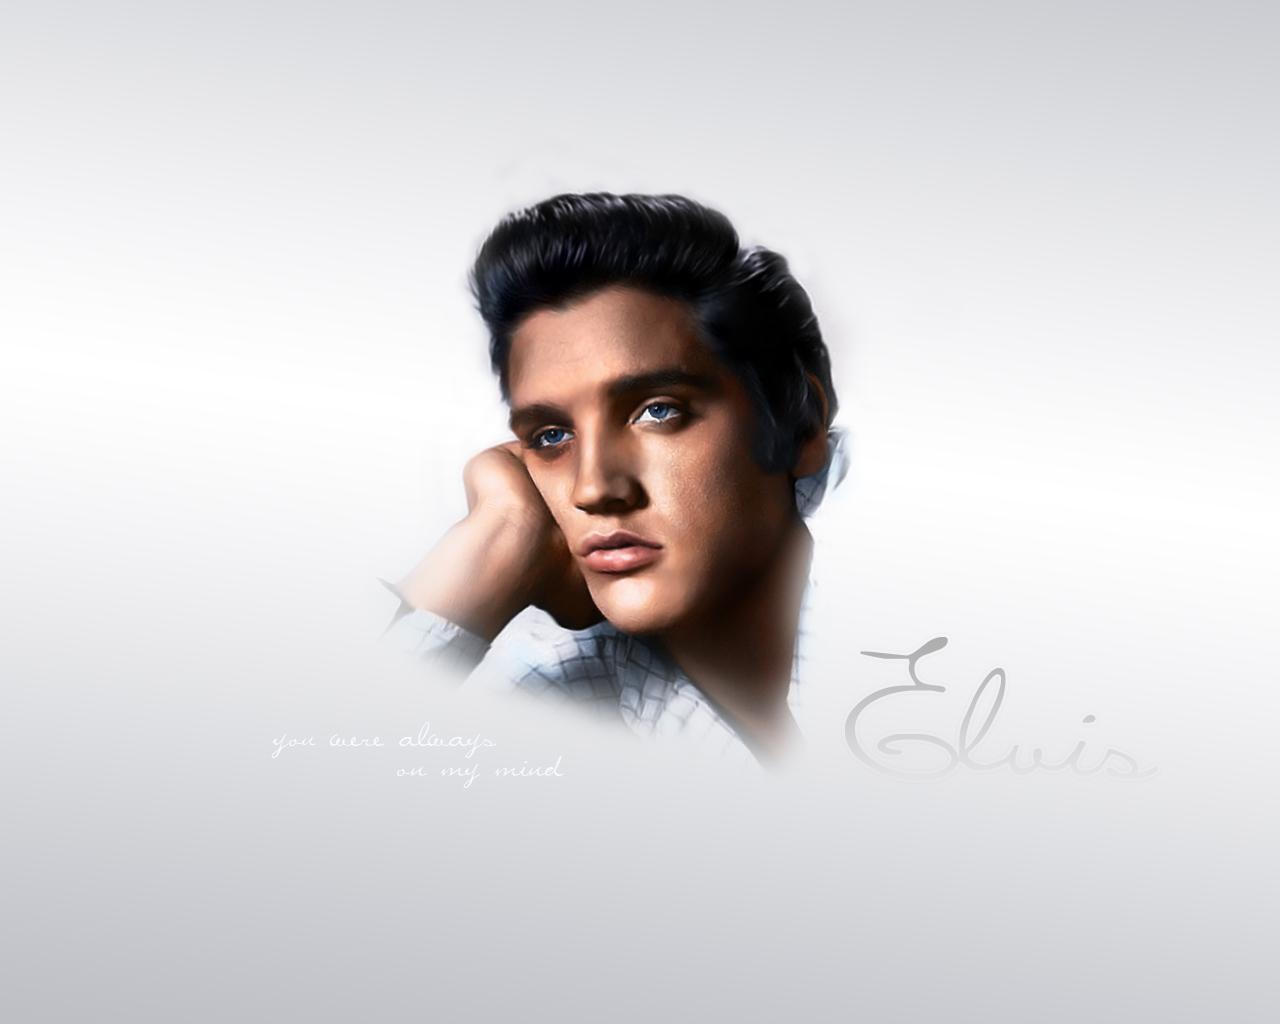 Elvis Presley Computer Wallpapers Desktop Backgrounds 1280×1024 ...